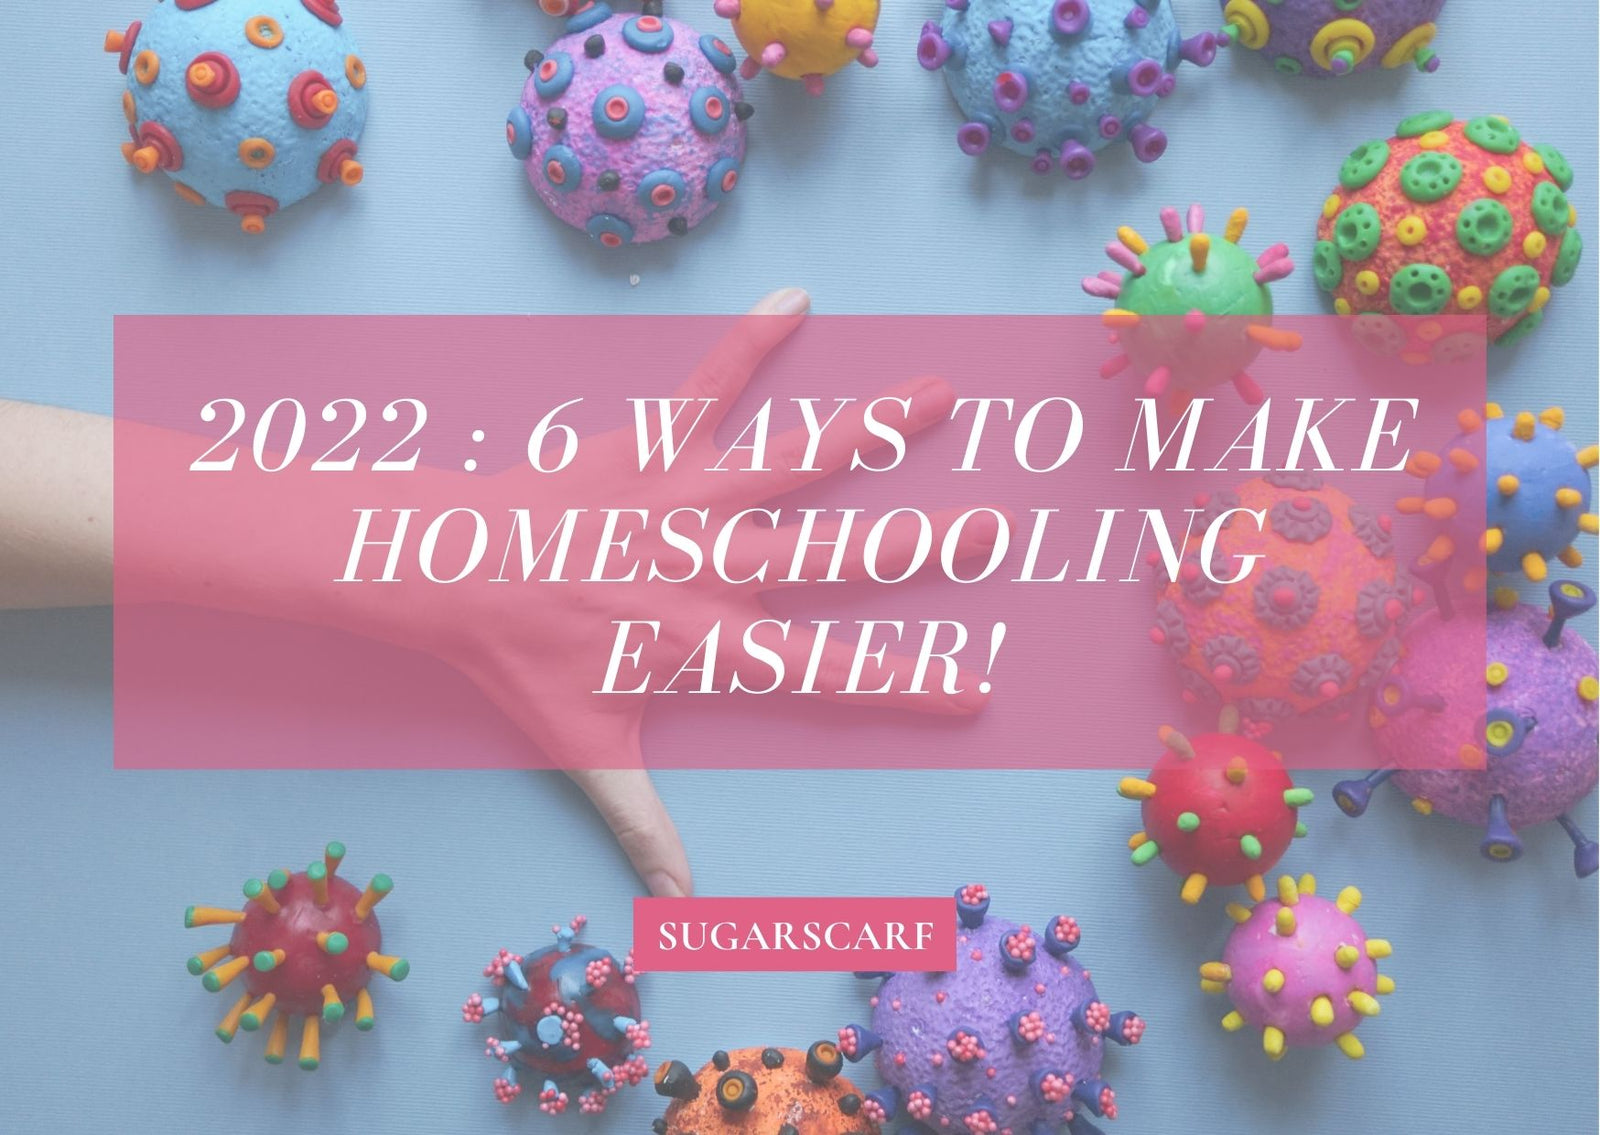 6 ways to make homeschooling easier!